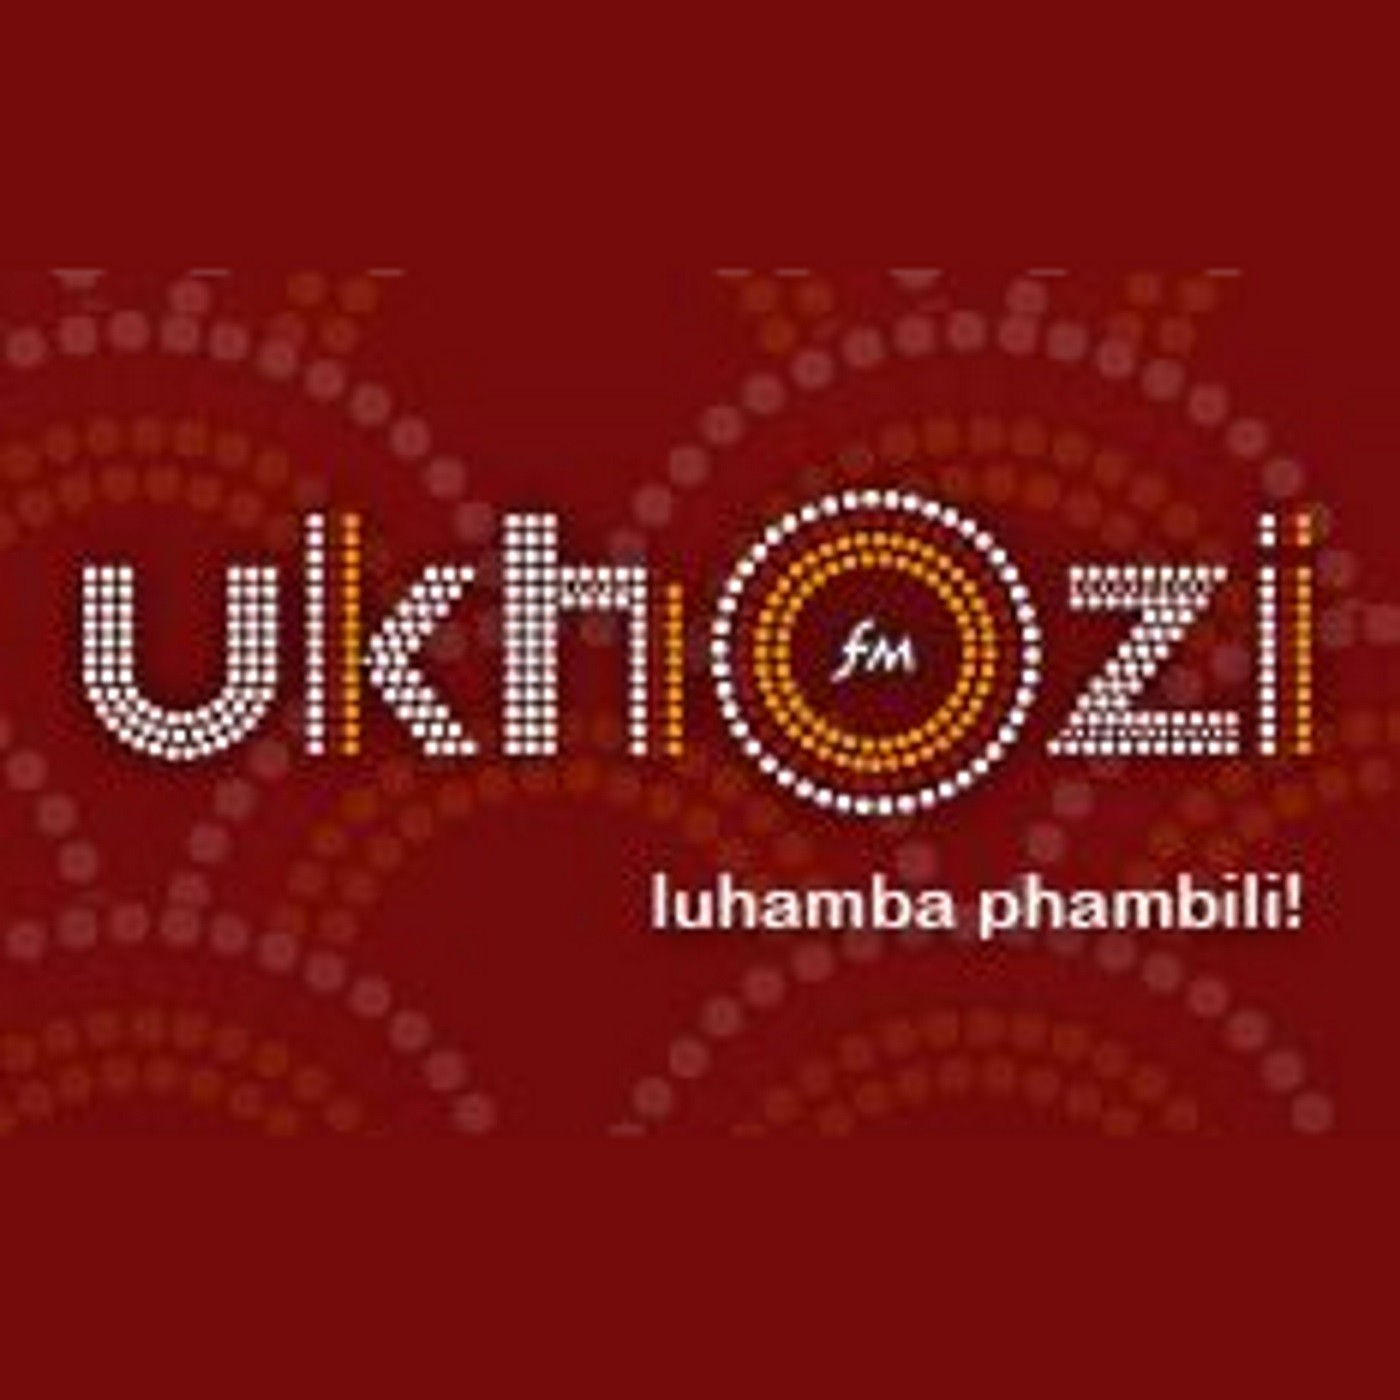 Khuthazeka no Sthembiso Zondo_Ukucela uxolo kuzokuvulela iminyango evaliwe